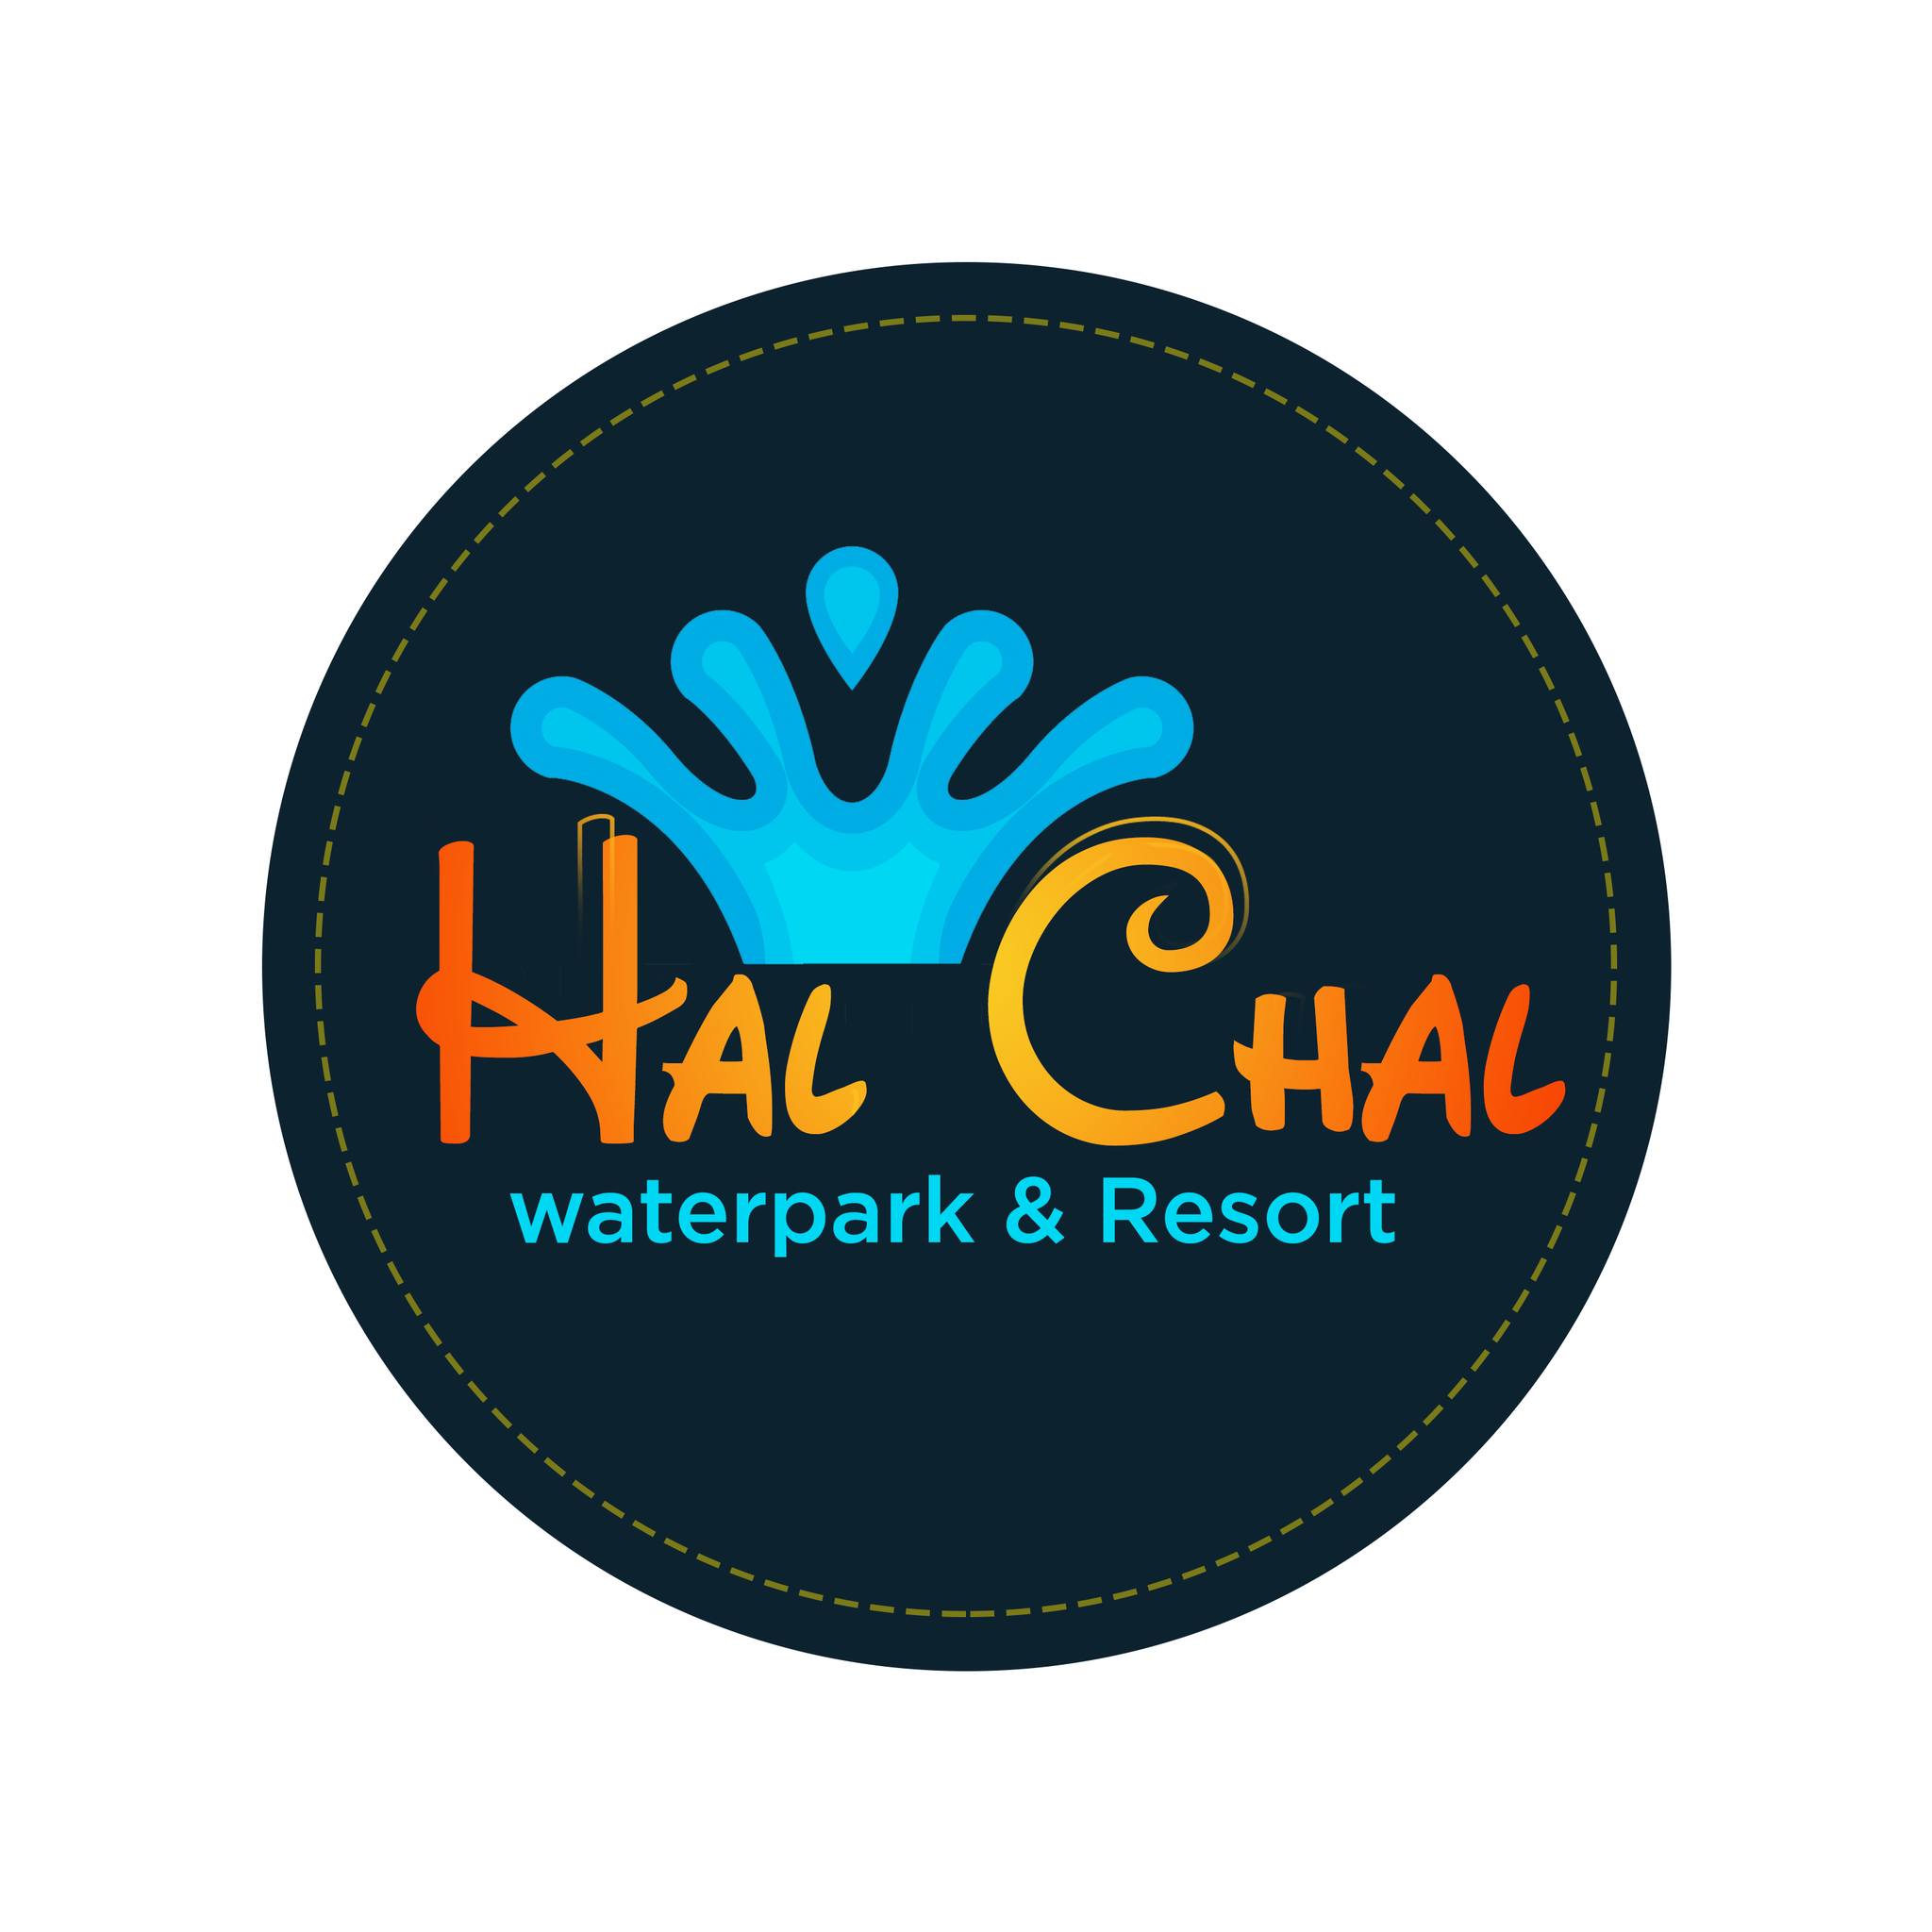 Halchal Waterpark|Adventure Park|Entertainment